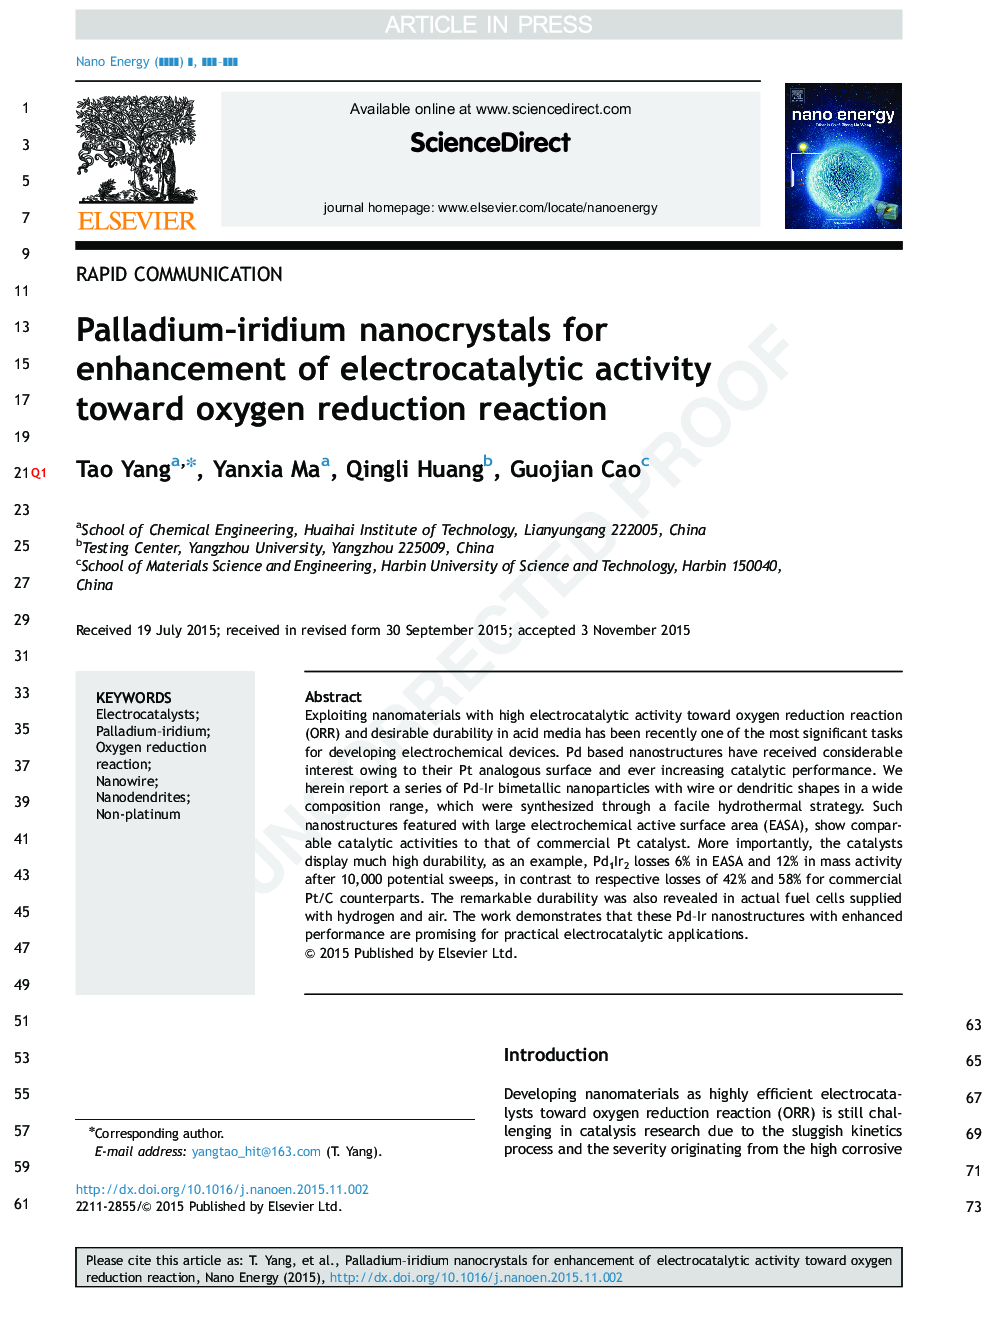 نانوبلورهای پالادیوم-ایریدیوم برای افزایش فعالیت الکتریکی کاتالیزوری به سمت واکنش کاهش اکسیژن 